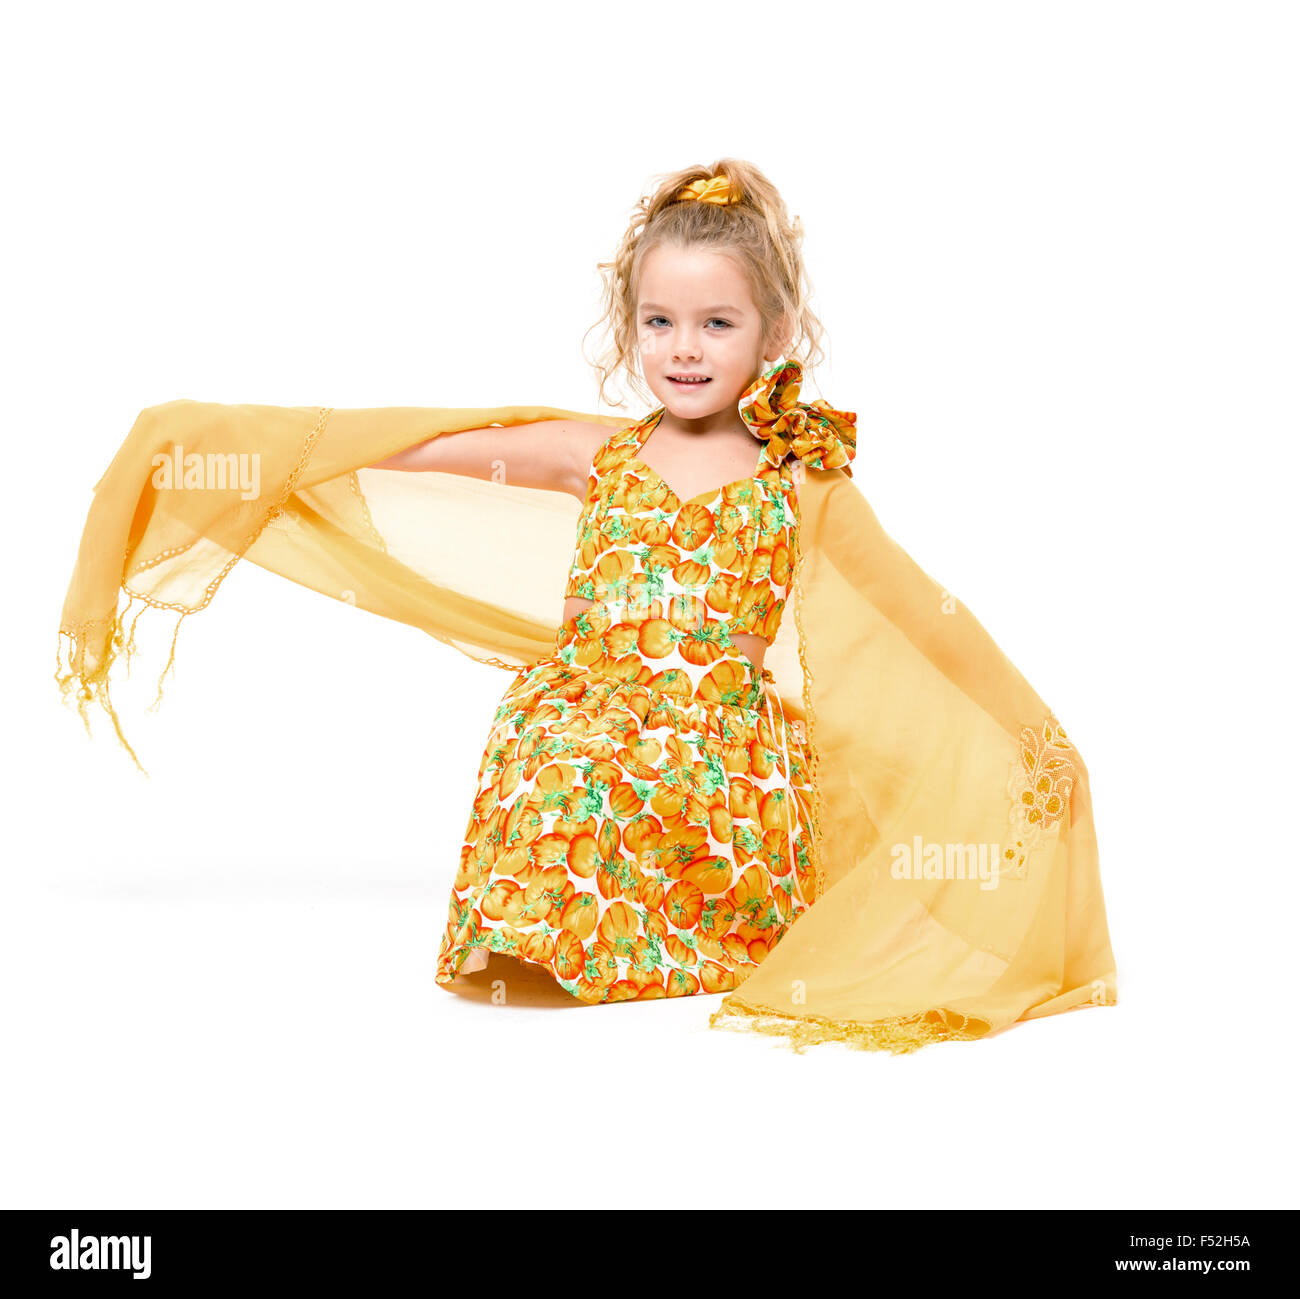 Petite fille dans une robe jaune avec châle posant, sur fond blanc Banque D'Images